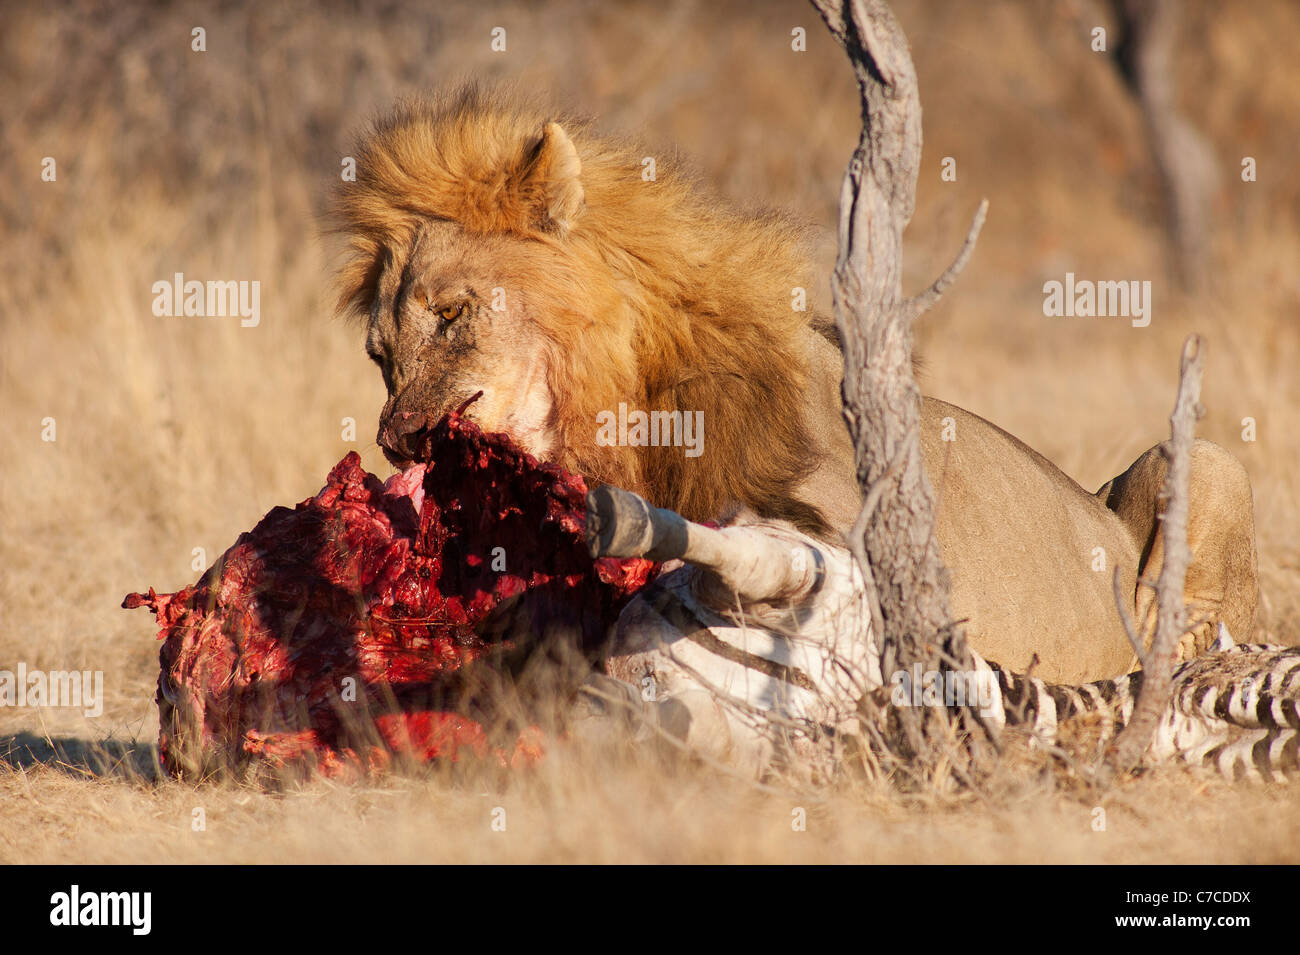 Grand lion mâle (Panthera leo) sur un zébré Kill, Parc national d'Etosha, Namibie Banque D'Images